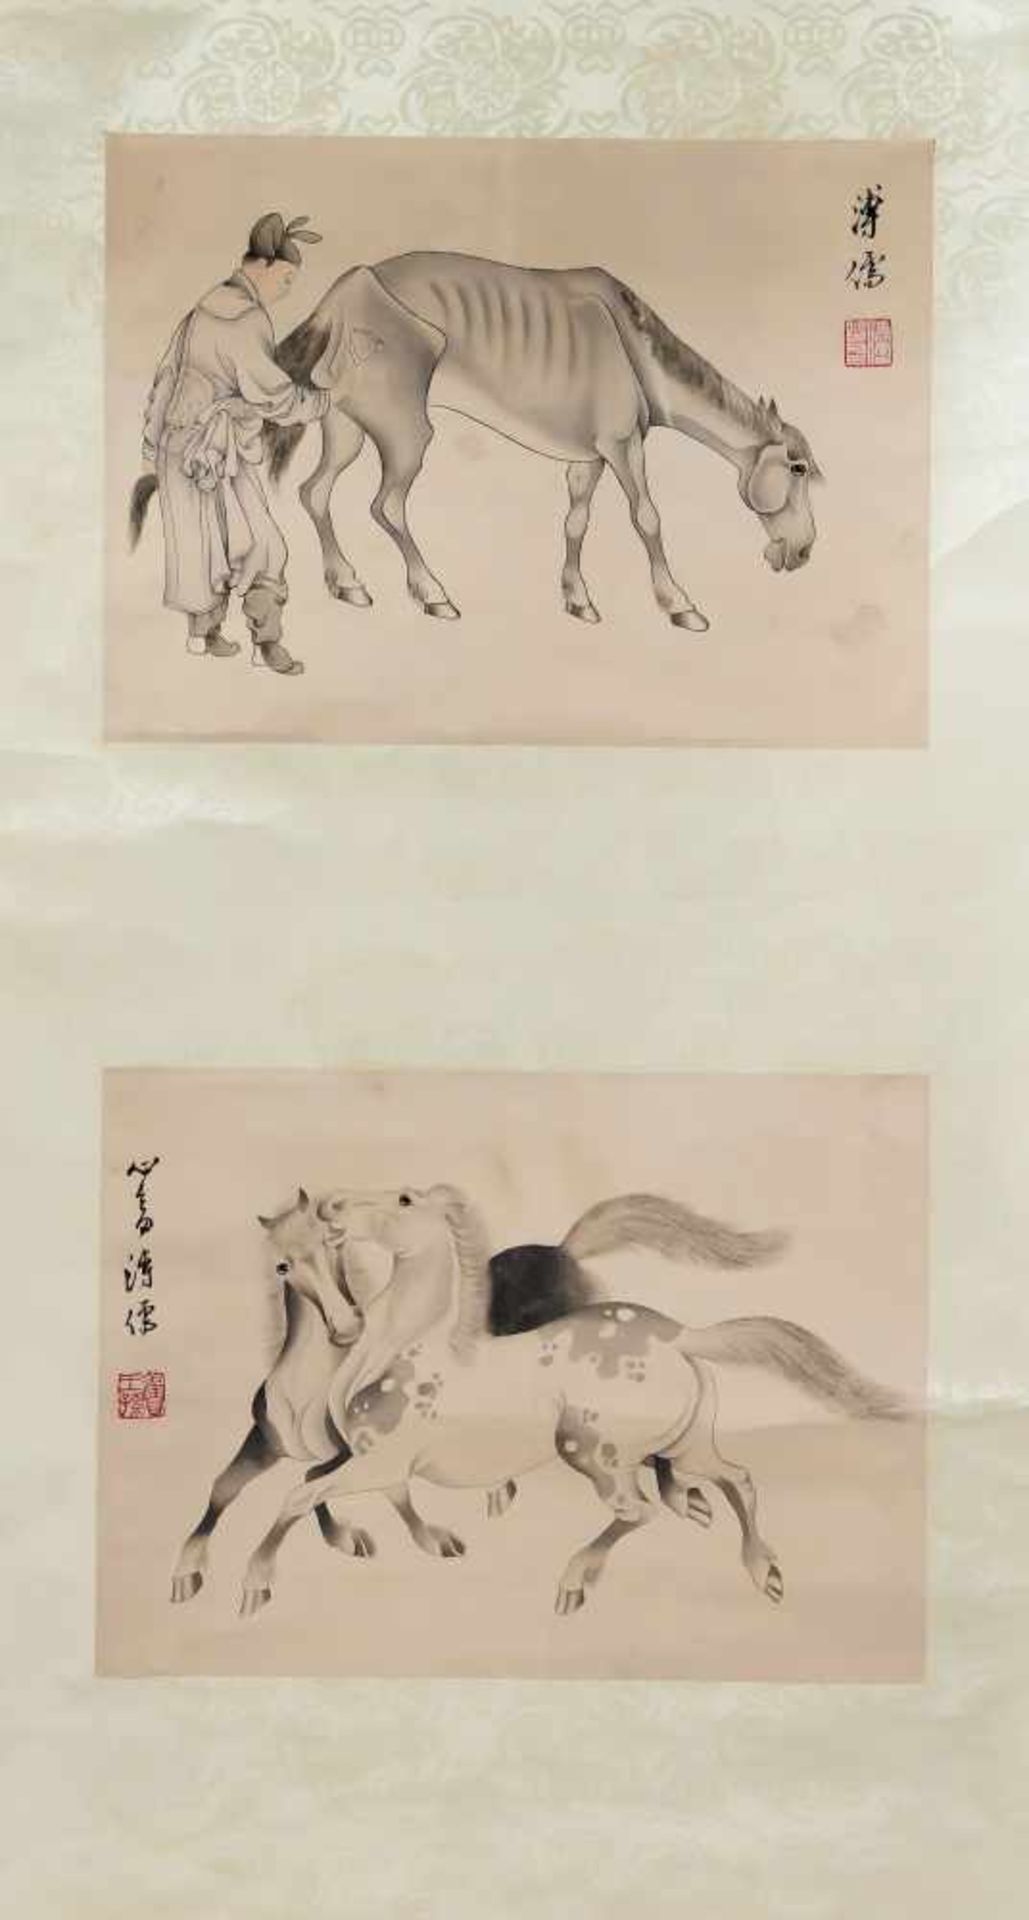 4 Bildrollen, China, 20. Jh., unterschiedliche Motive und Techniken. Leicht ber., Breiteim - Bild 3 aus 4